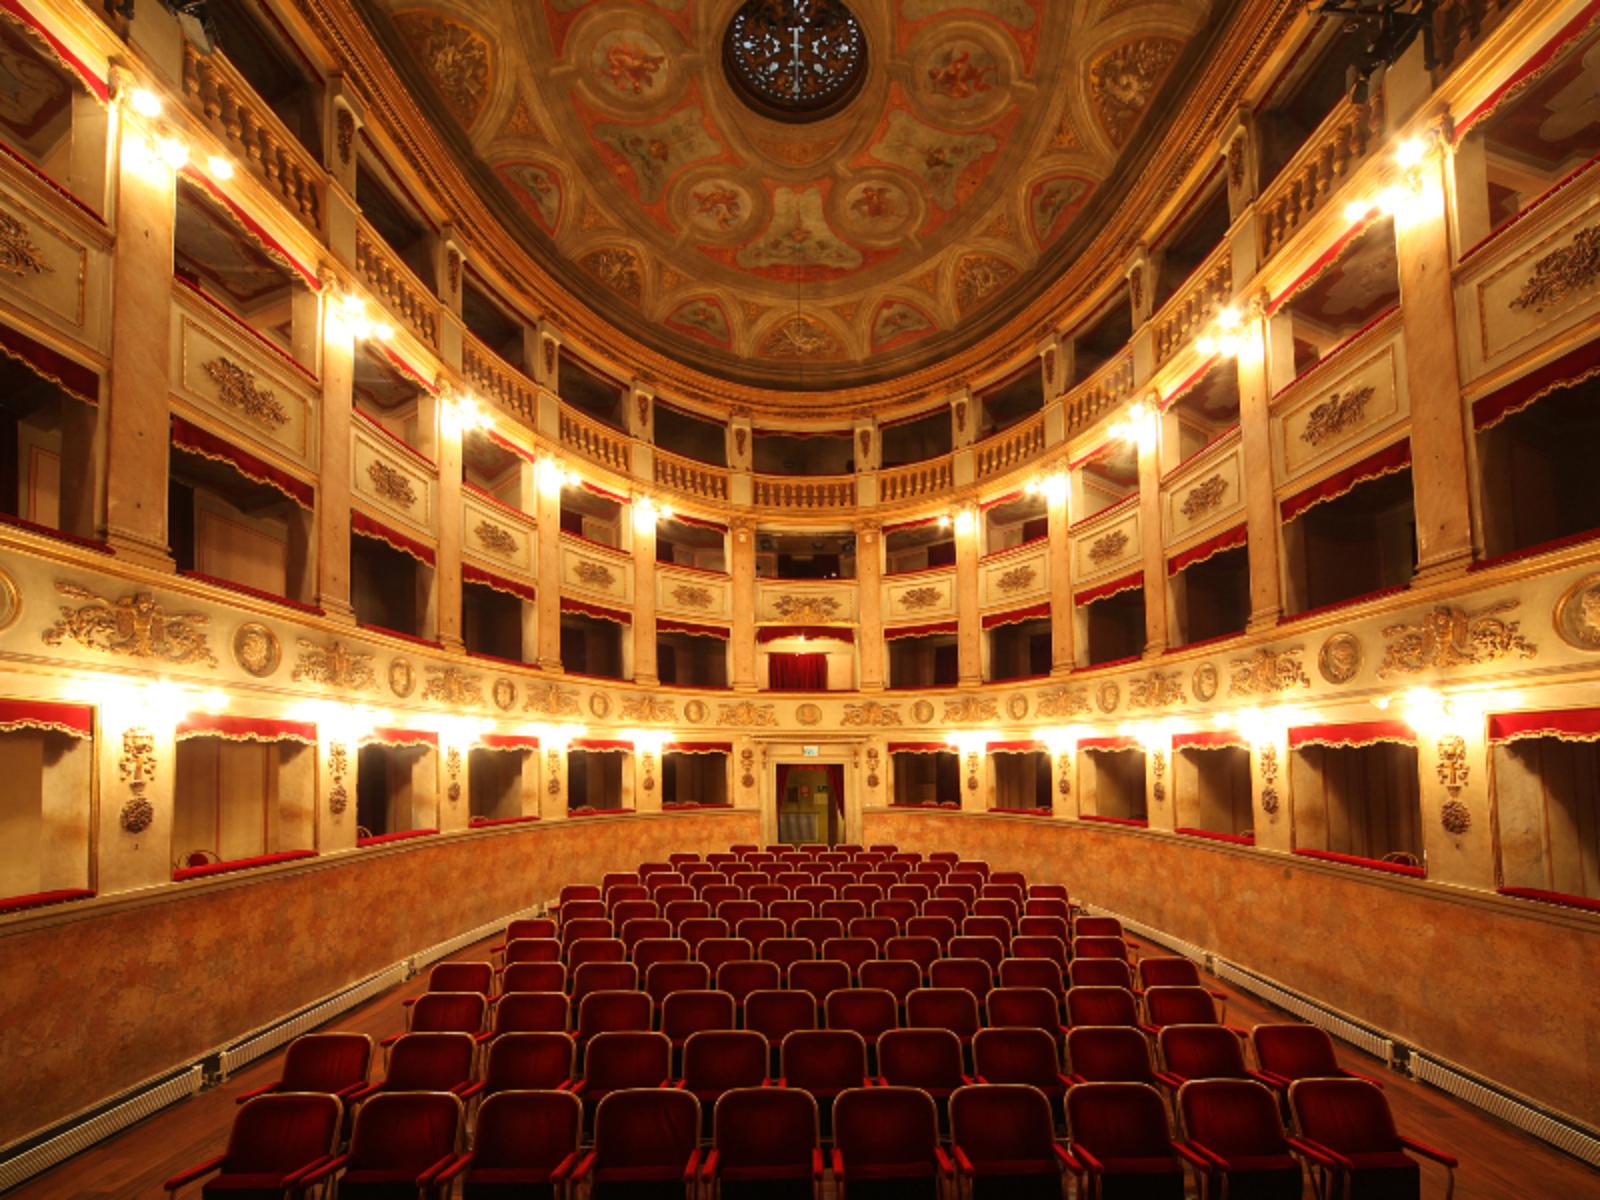 Municipal theatre of San Giovanni in Persiceto